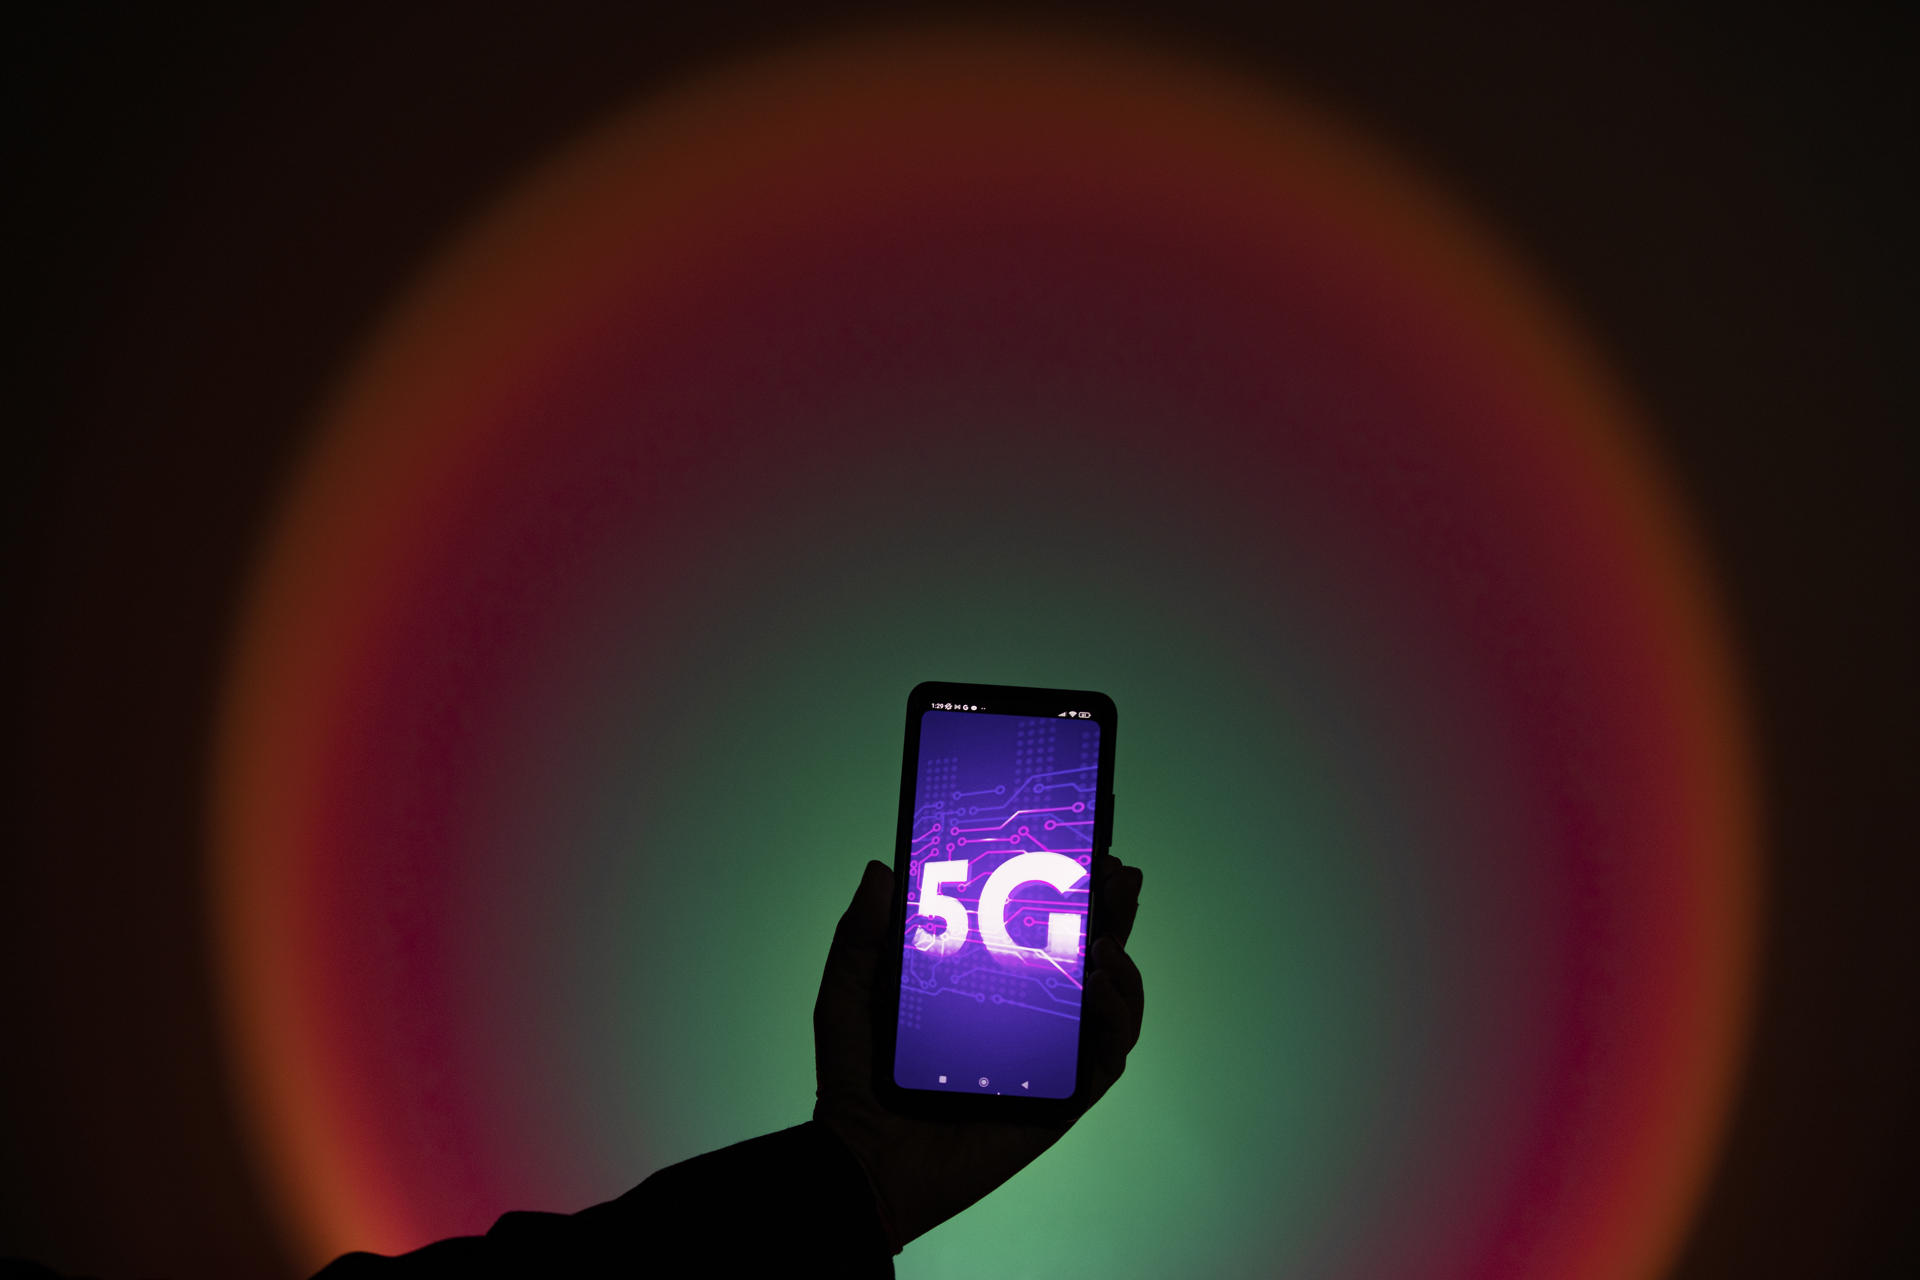 Qué depara el futuro en la adopción de Smartphone 5G con más  funcionalidades? - Revista Summa